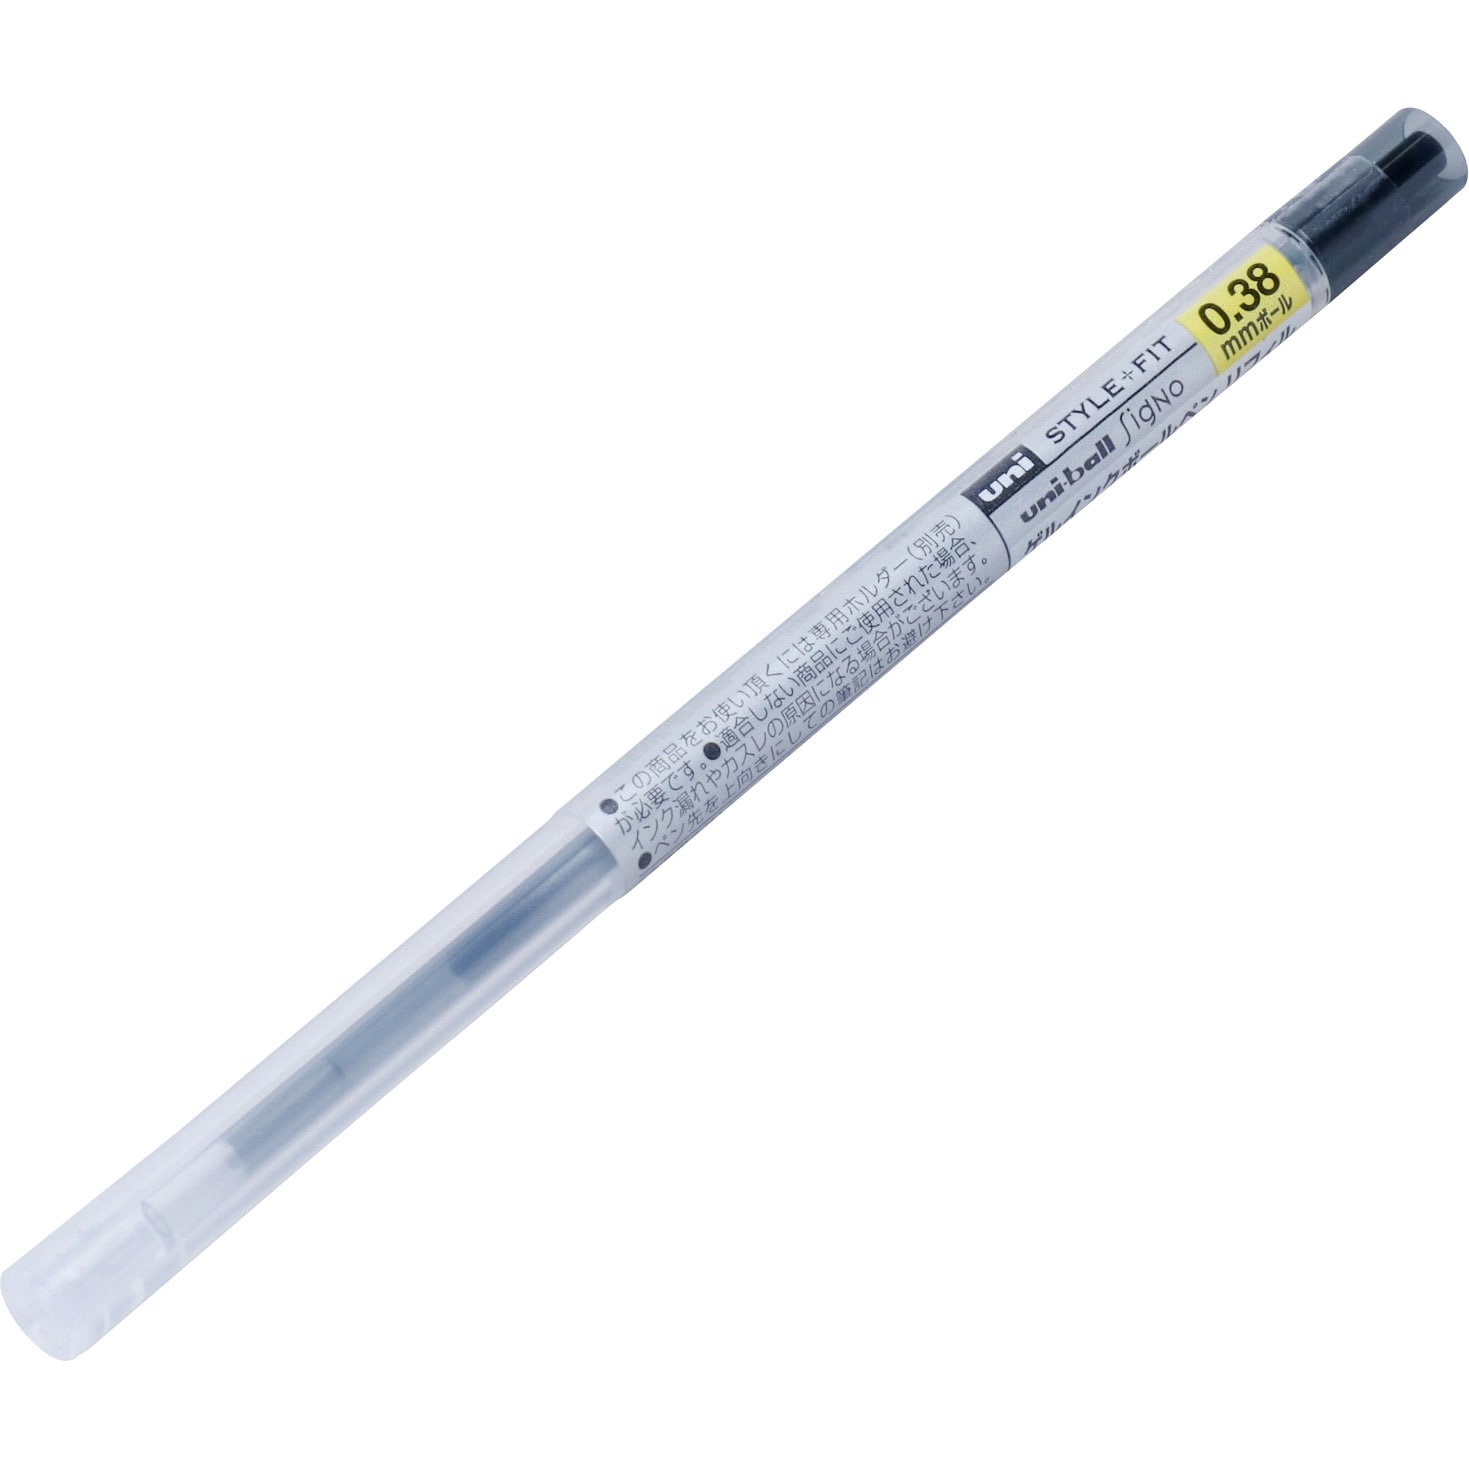 業務用300セット) 三菱鉛筆 ボールペン替え芯/リフィル 〔0.28mm〕 ゲルインク UMR10928.33